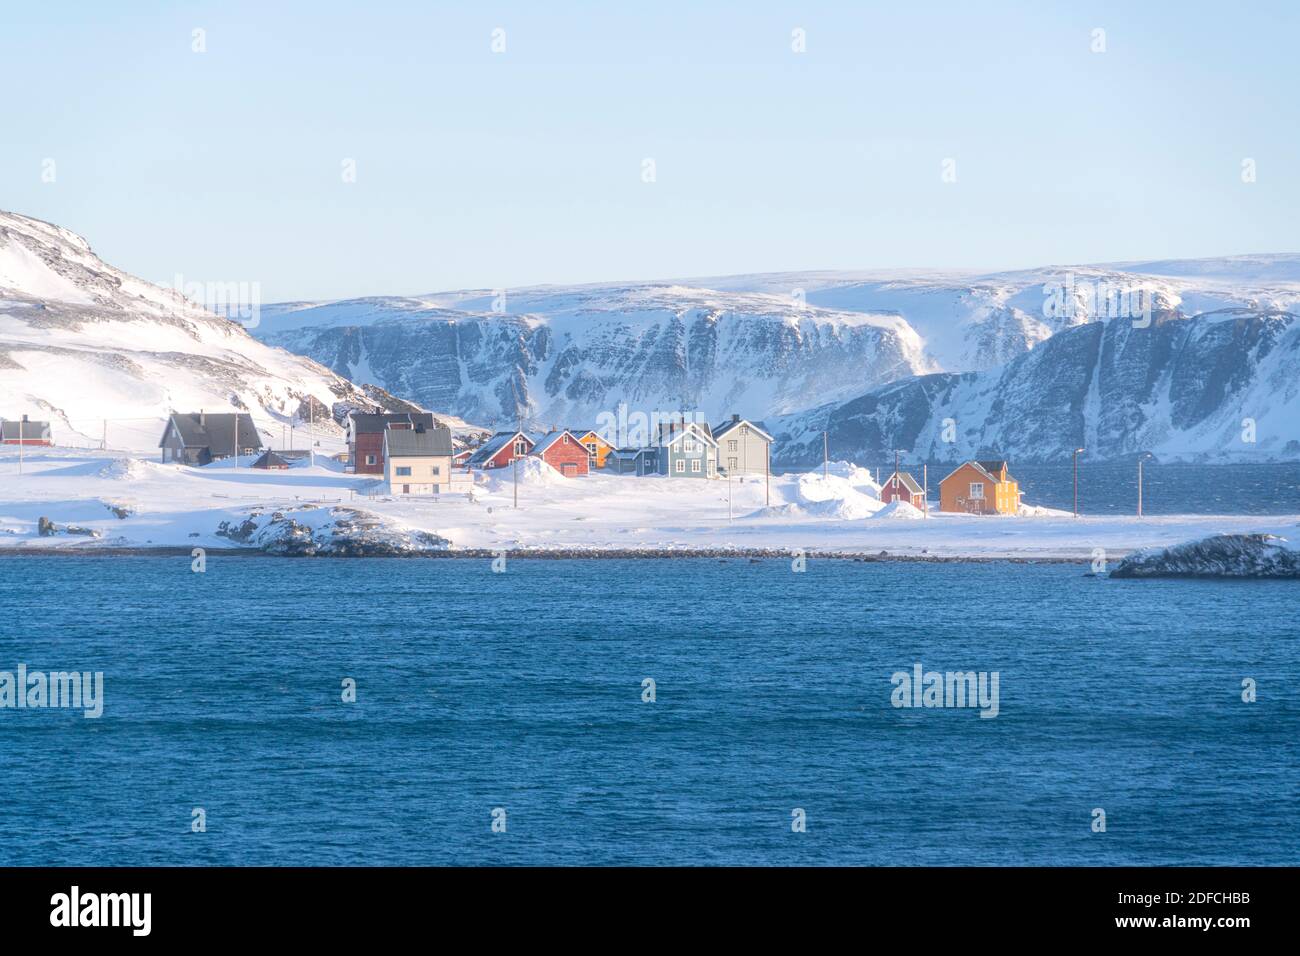 Traditionelle Häuser von Fischern im Schnee, Veines, Kongfjord, Varanger Halbinsel, Troms Og Finnmark, Norwegen Stockfoto